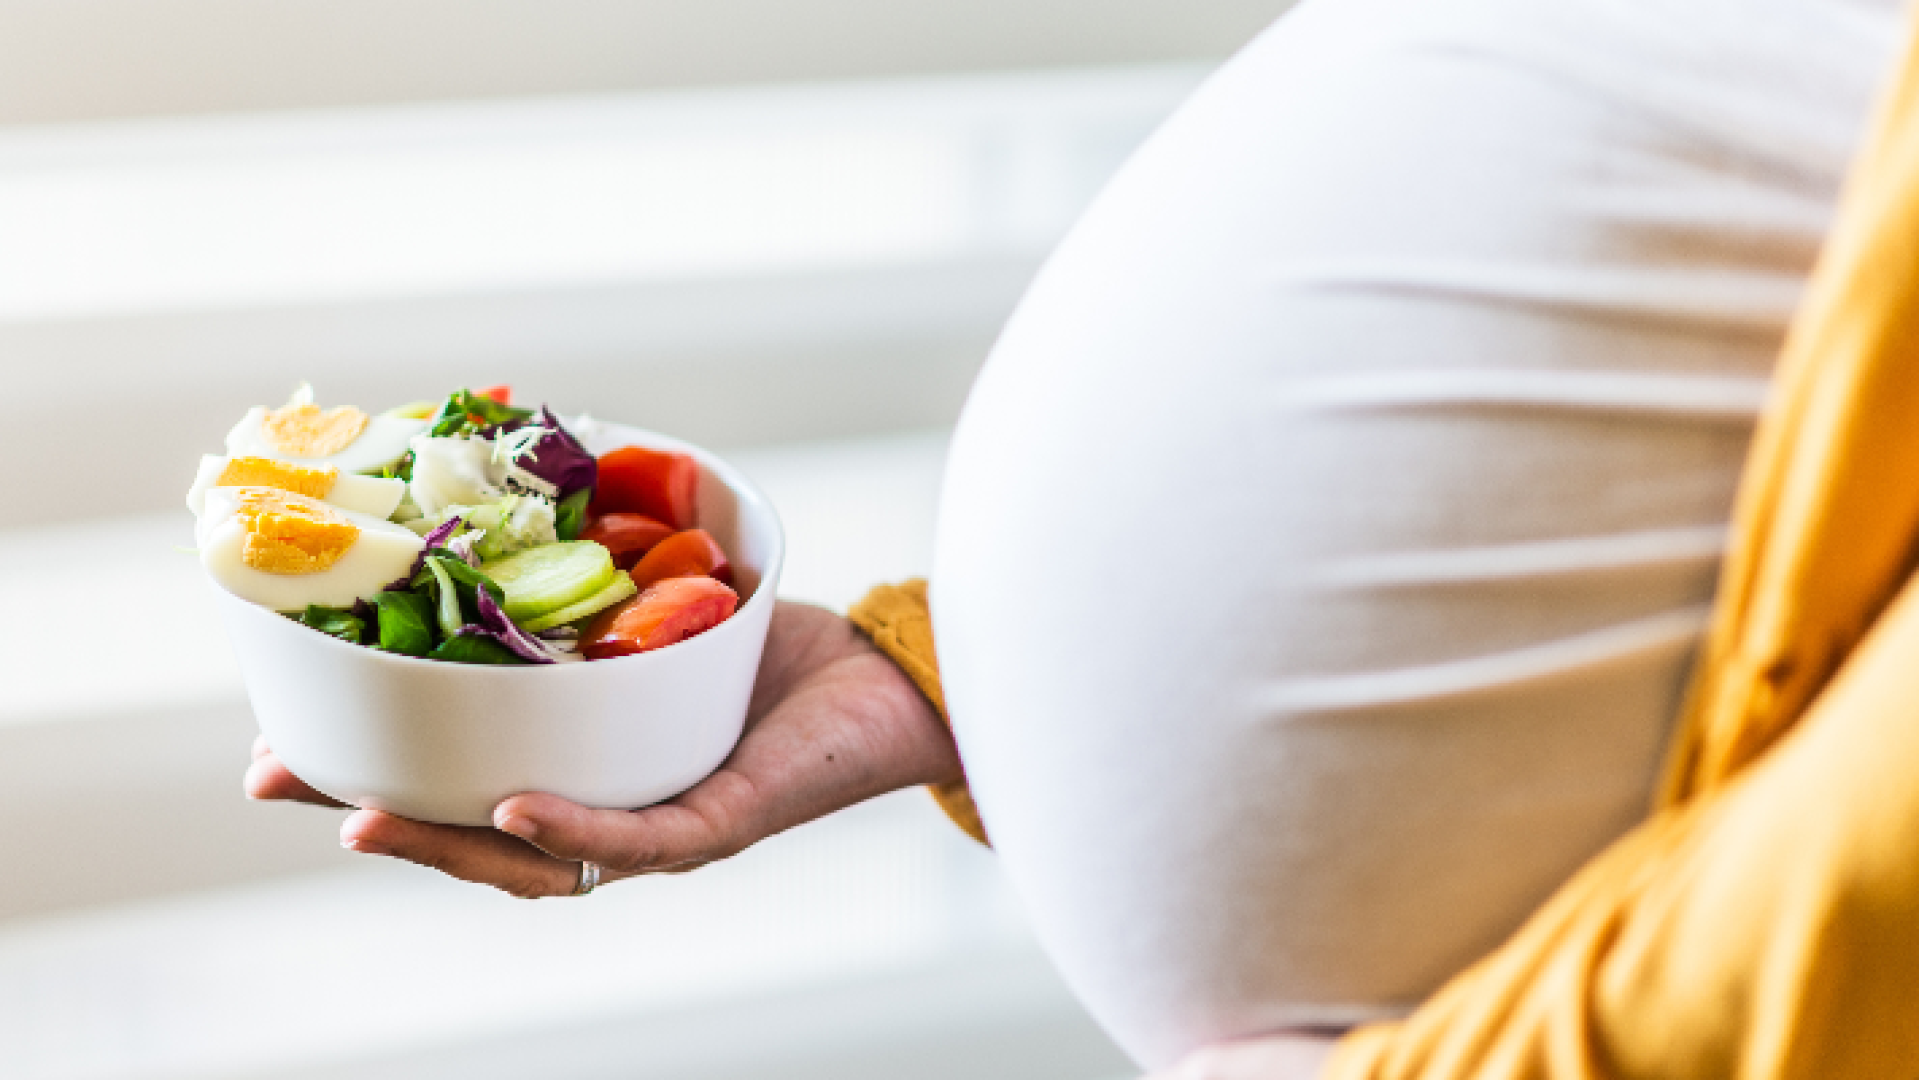 تأثير الأنظمة الغذائية للأم الحامل بملامح وجه جنينها